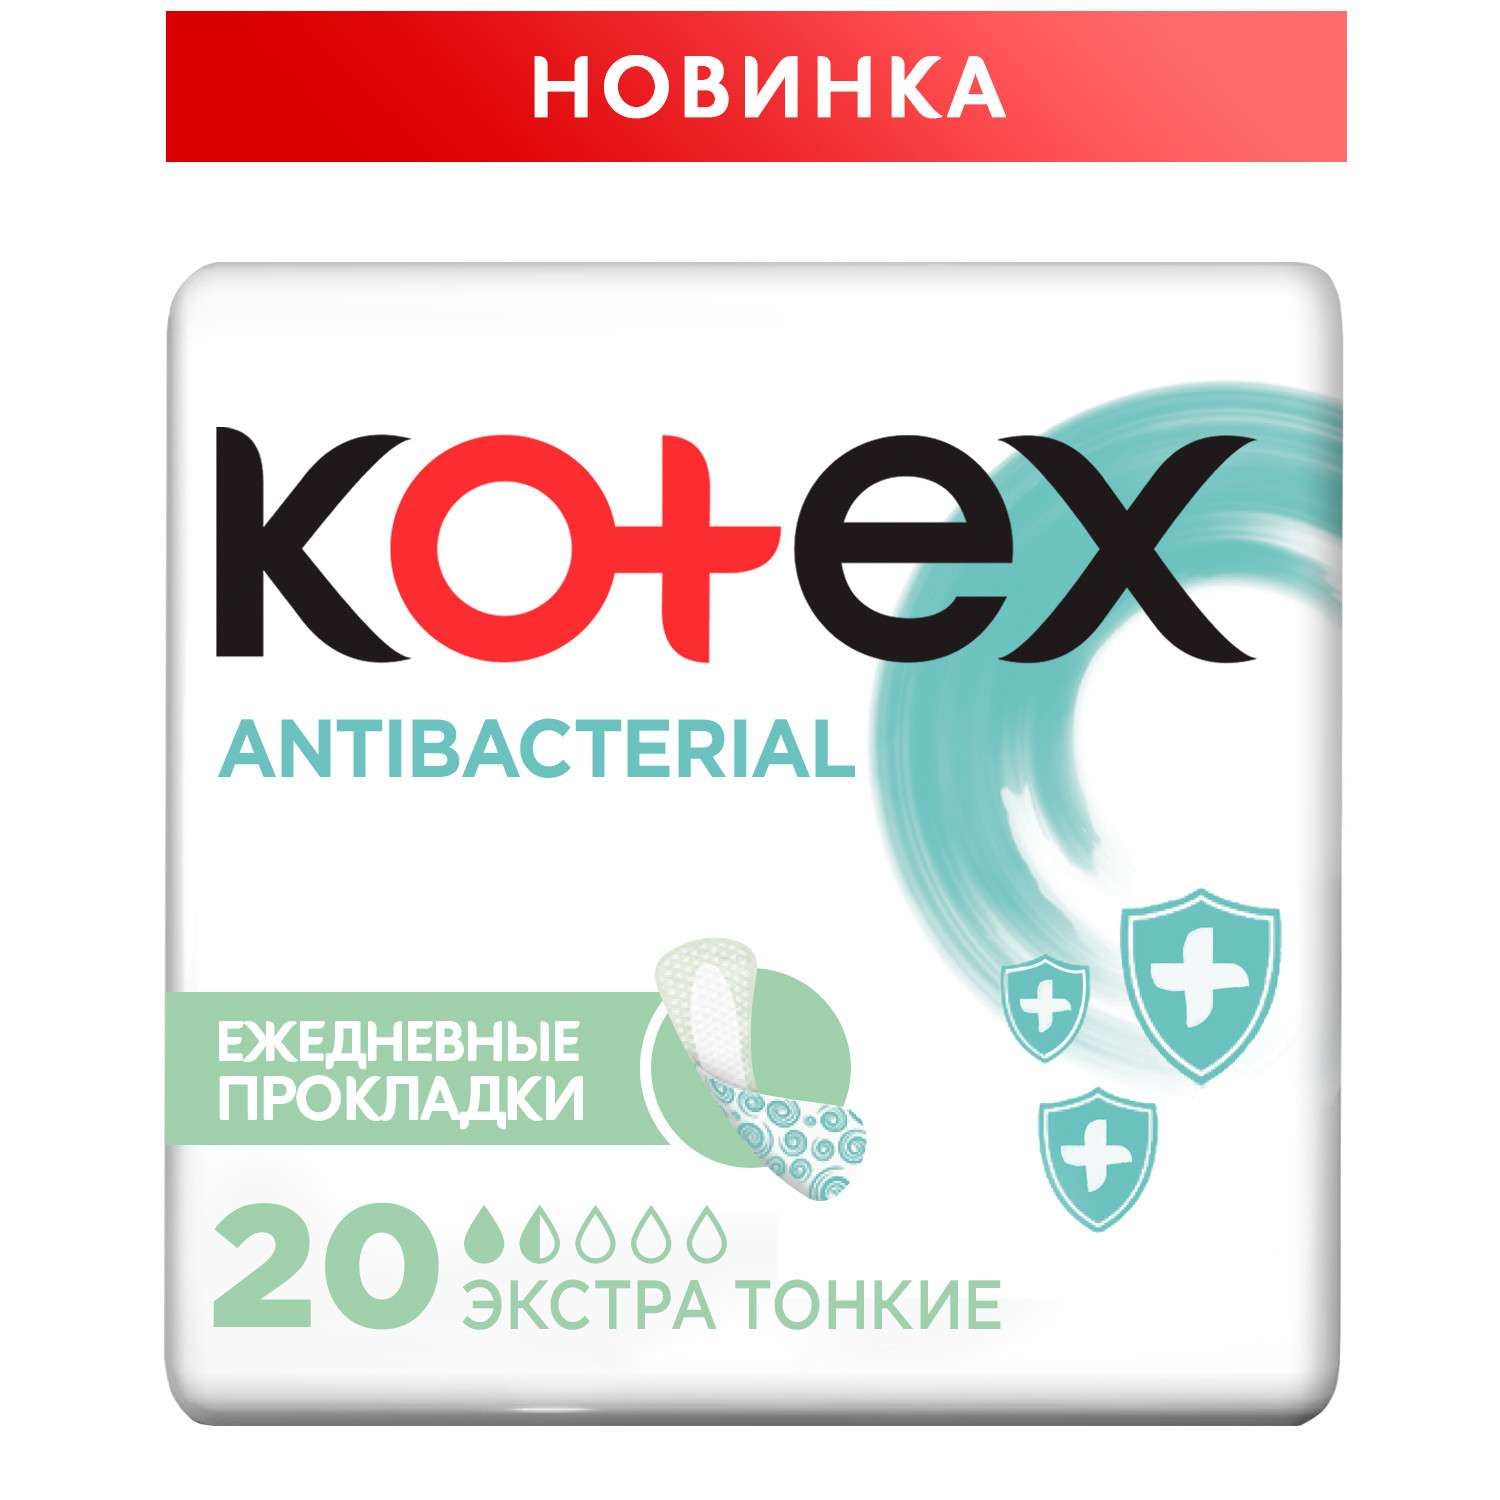 Прокладки KOTEX Antibacterial Экстра ежедневные тонкие 20шт - фото 2